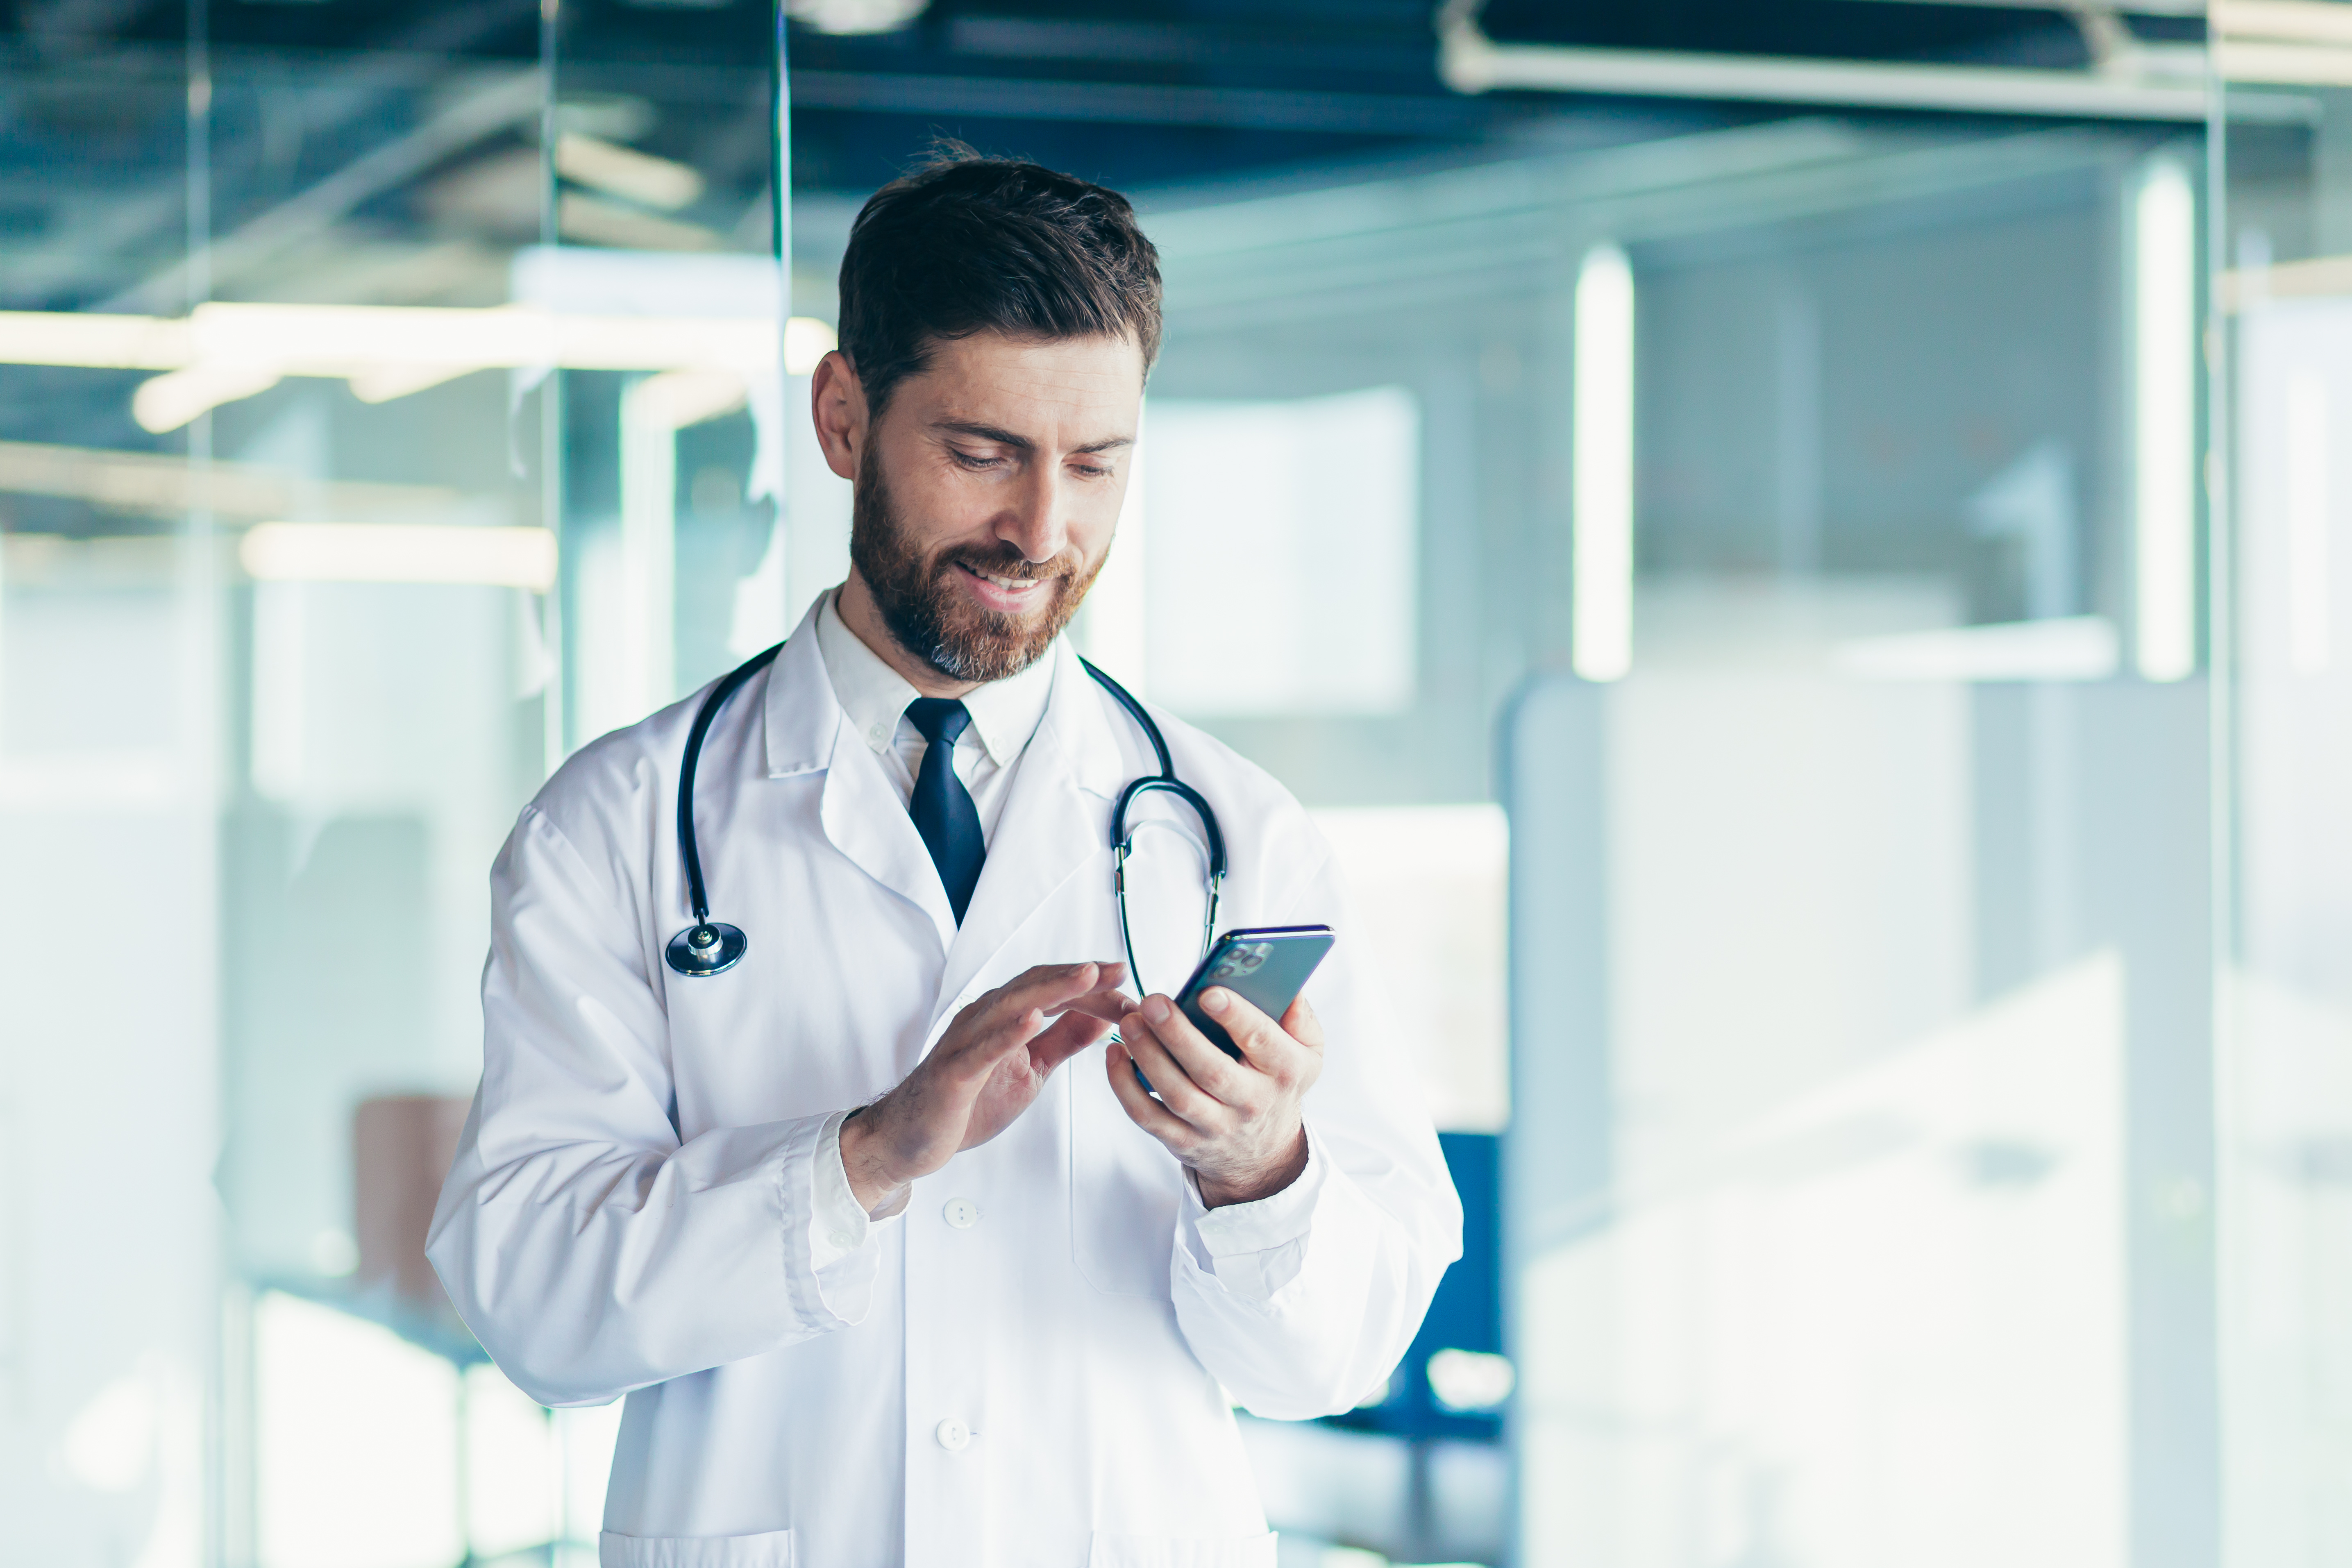 Whatsapp può aiutare ad incrementare la redditività di uno studio medico e migliorarne l’efficienza.